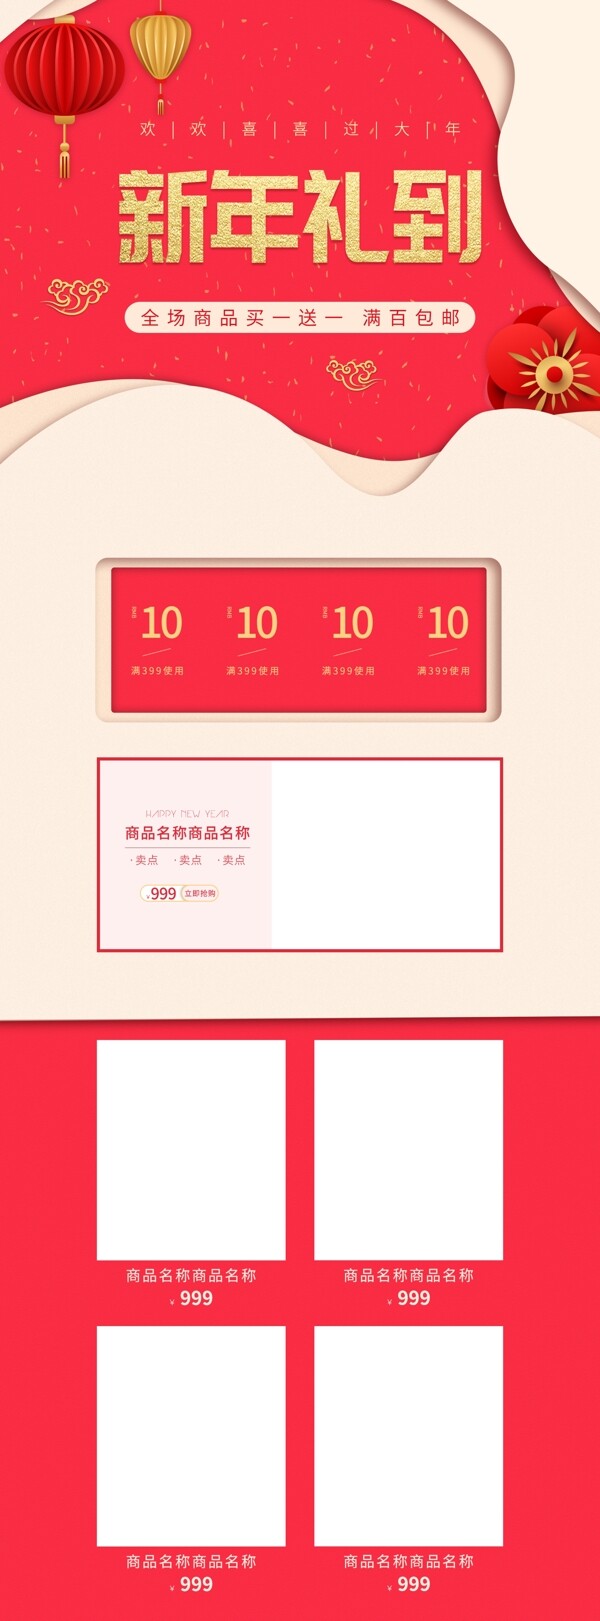 天猫淘宝新年微立体中国风红色喜庆首页模板